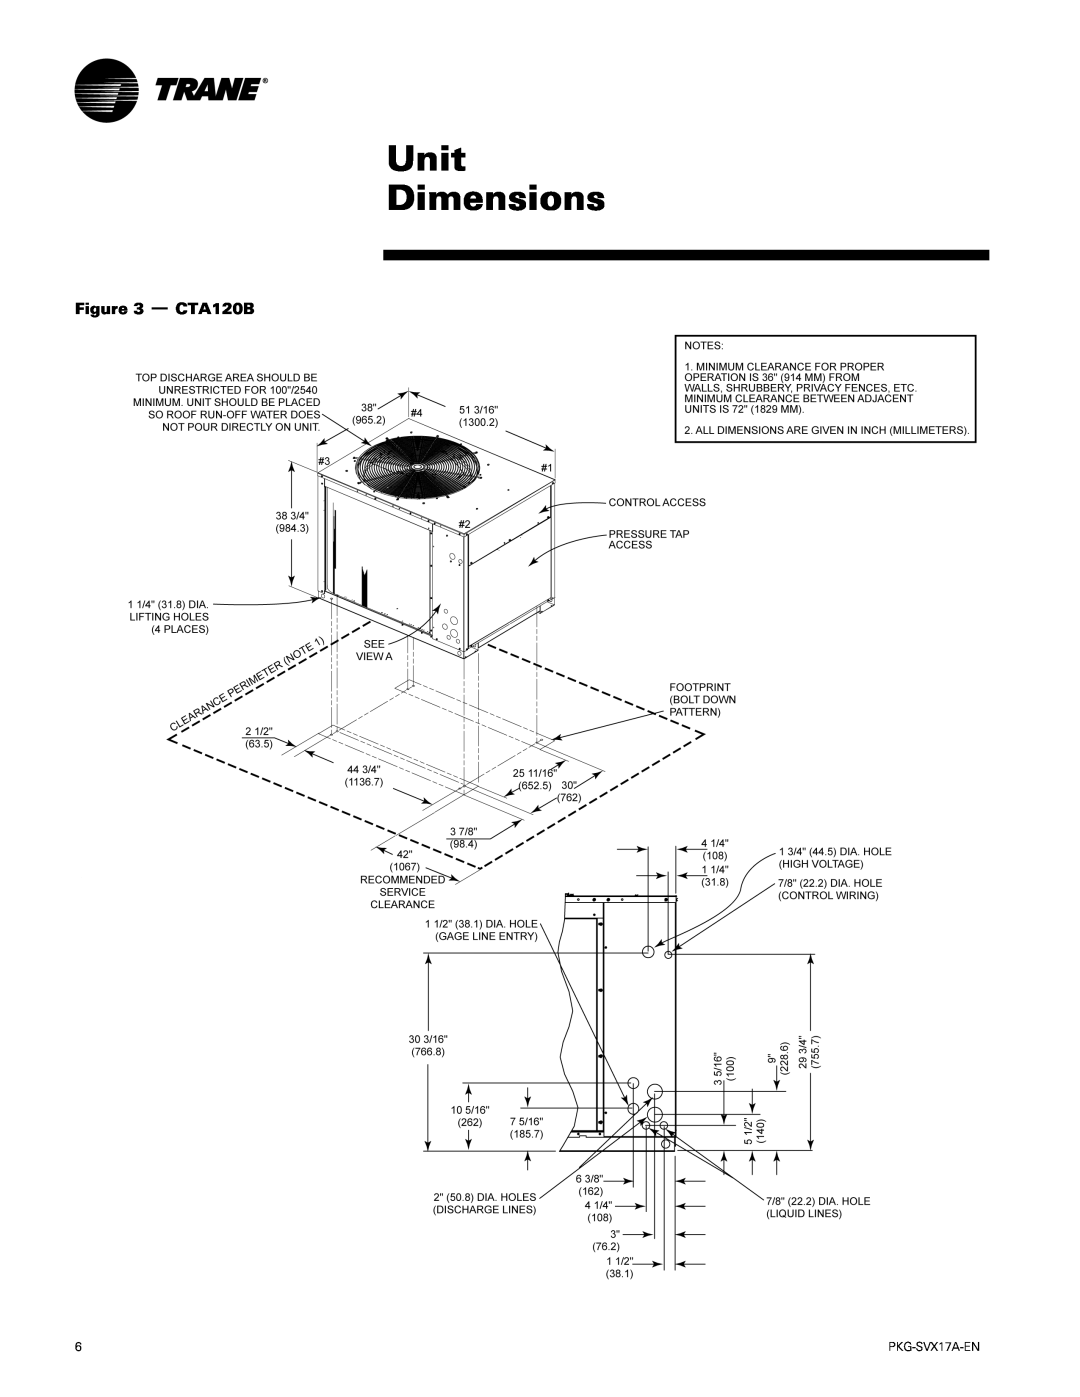 Trane PKG-SVX17A-EN manual Unit Dimensions, CTA120B 